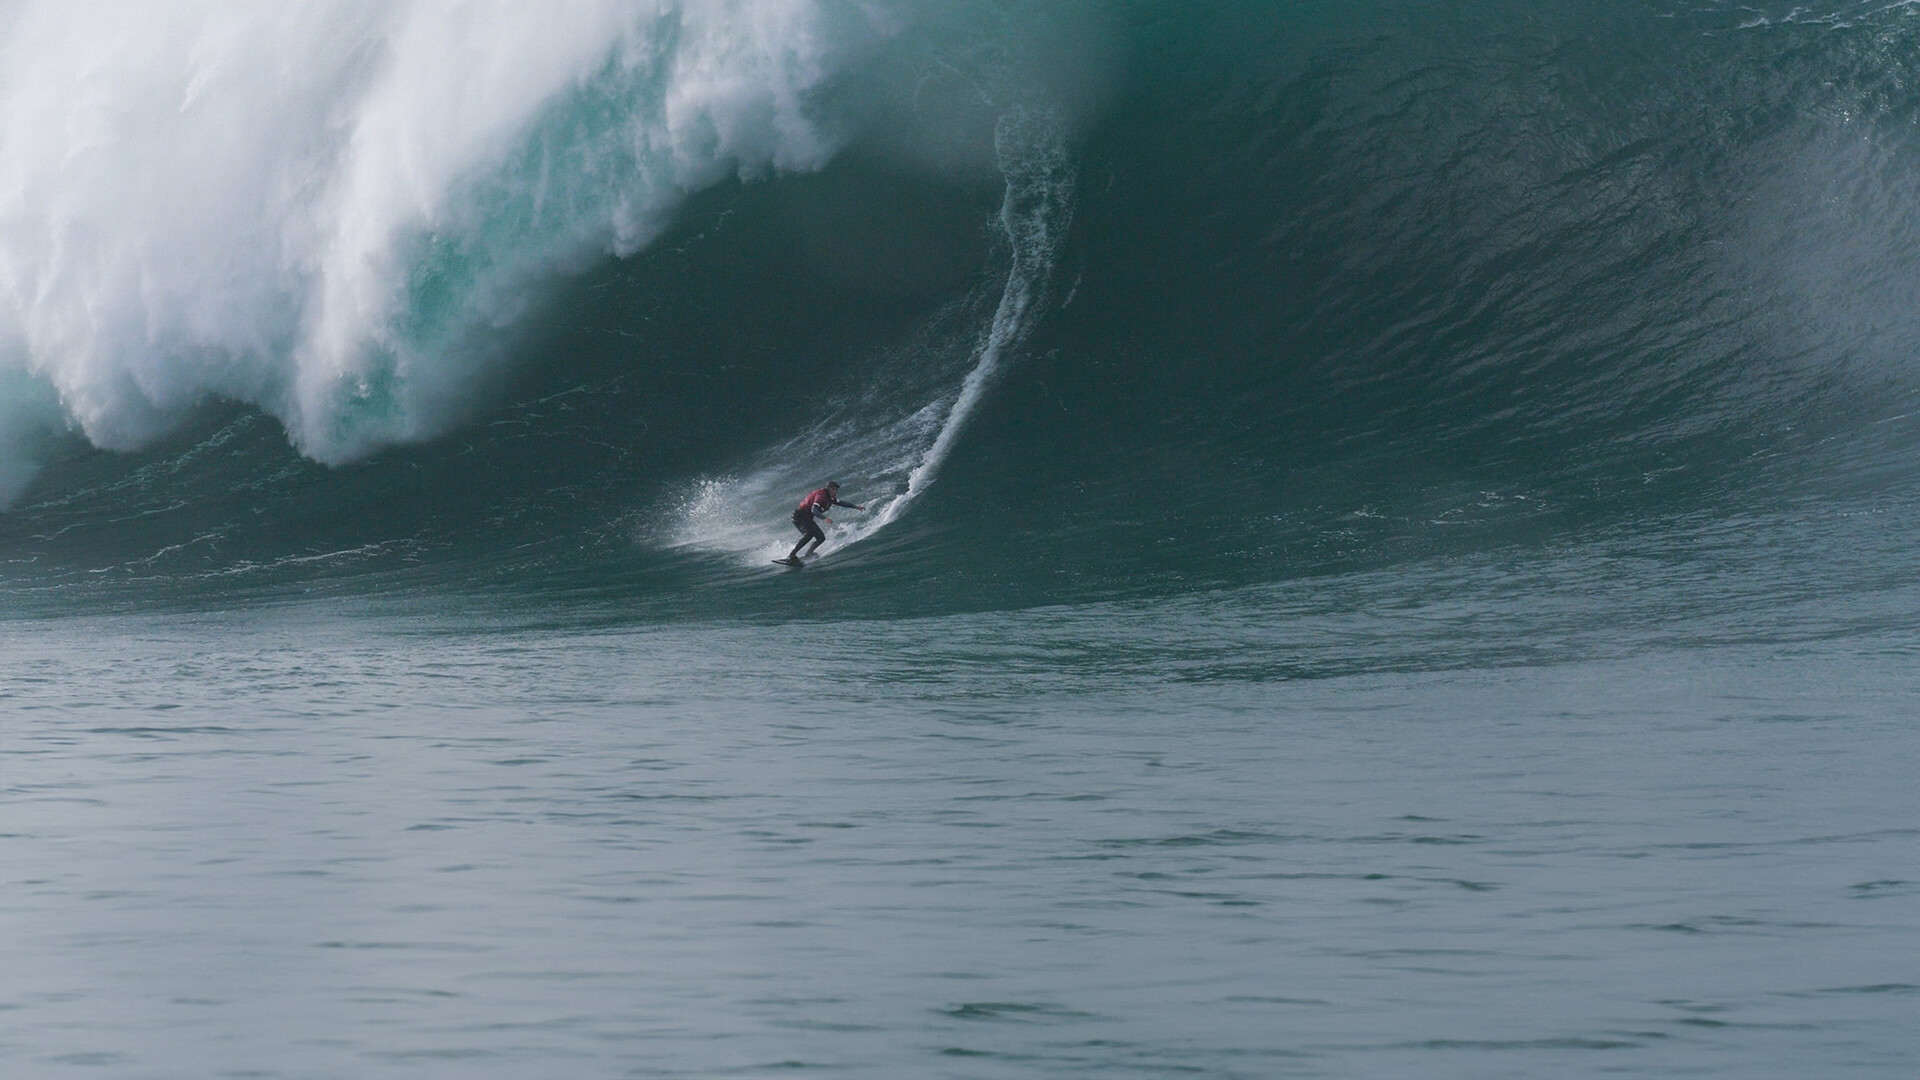 A surfer surfs a giant wave